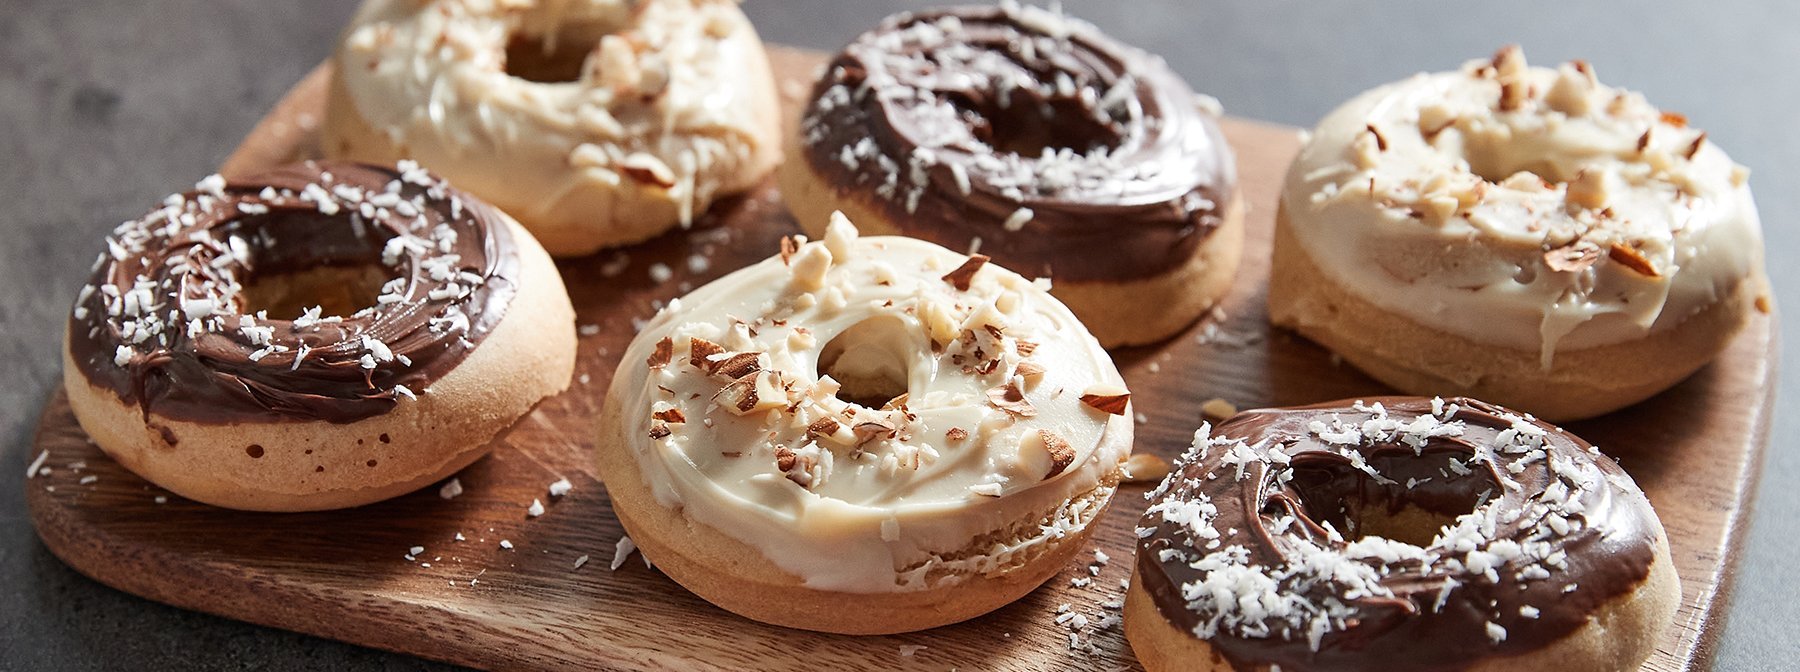 Gesunde Baked Donuts mit Protein-Aufstrich